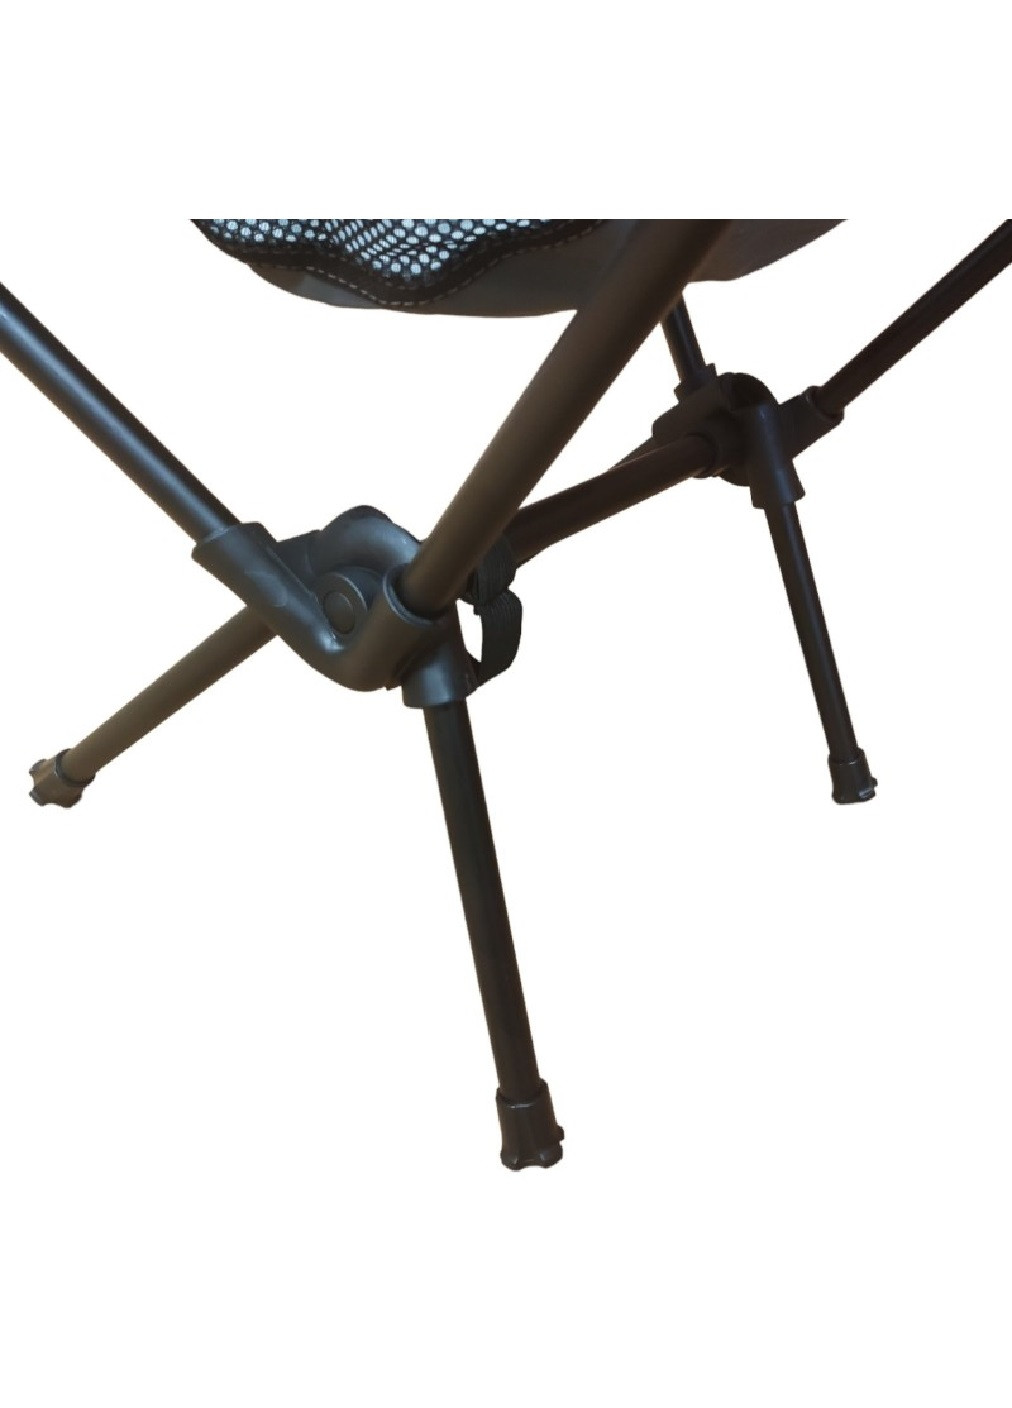 Раскладной компактный легкий стул кресло для отдыха дачи рыбалки туризма кемпинга 54x35x68 см (474779-Prob) Серый Unbranded (259751615)